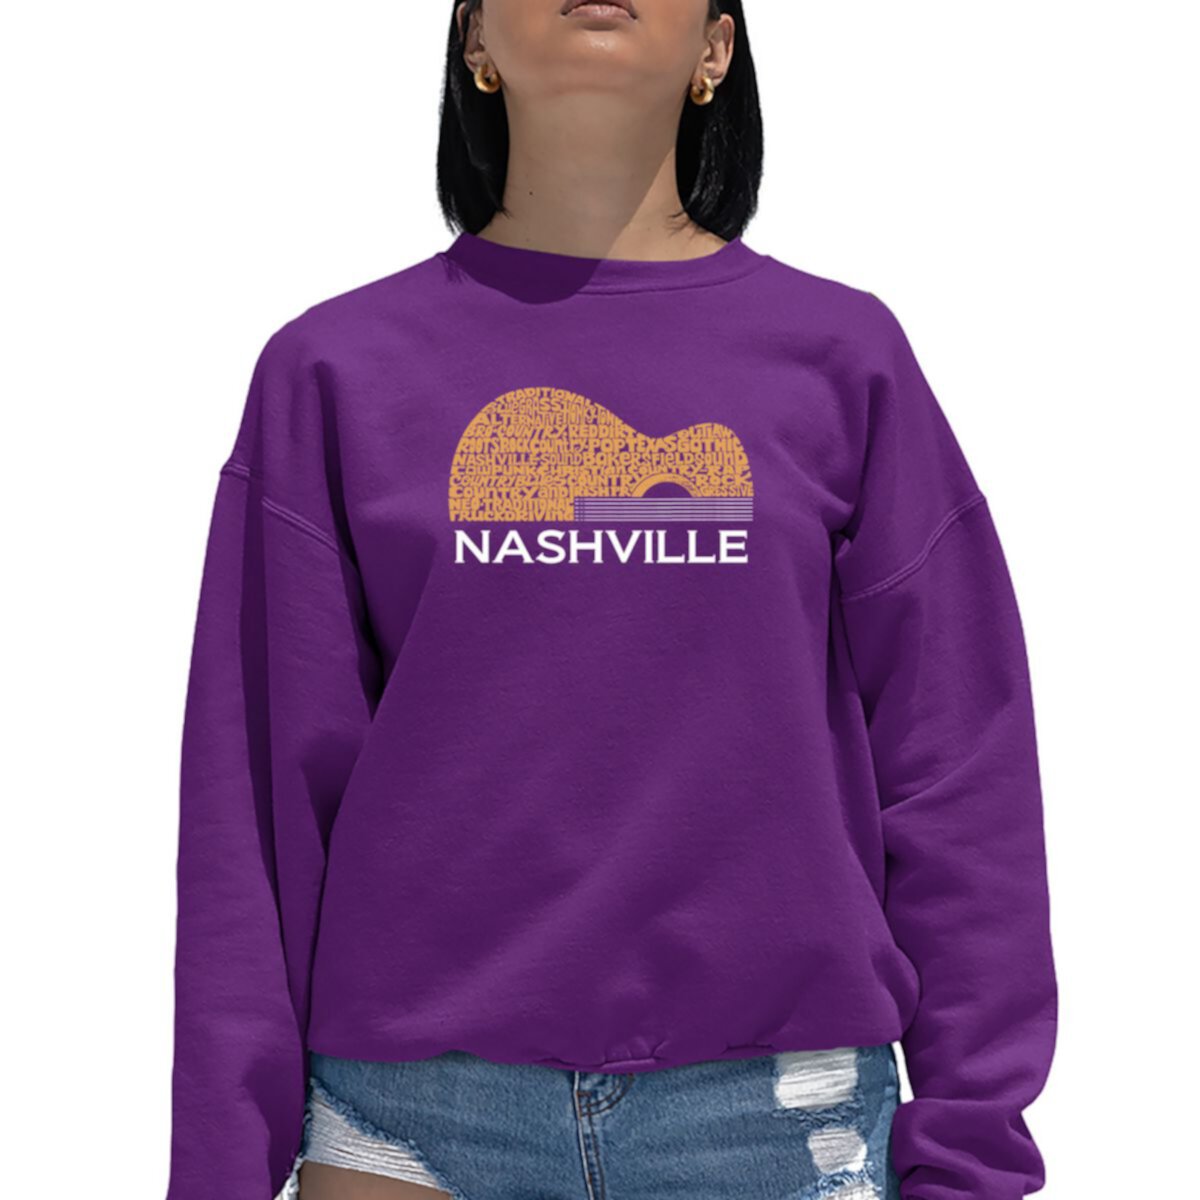 Nashville Guitar - Women's Word Art Crewneck Sweatshirt LA Pop Art